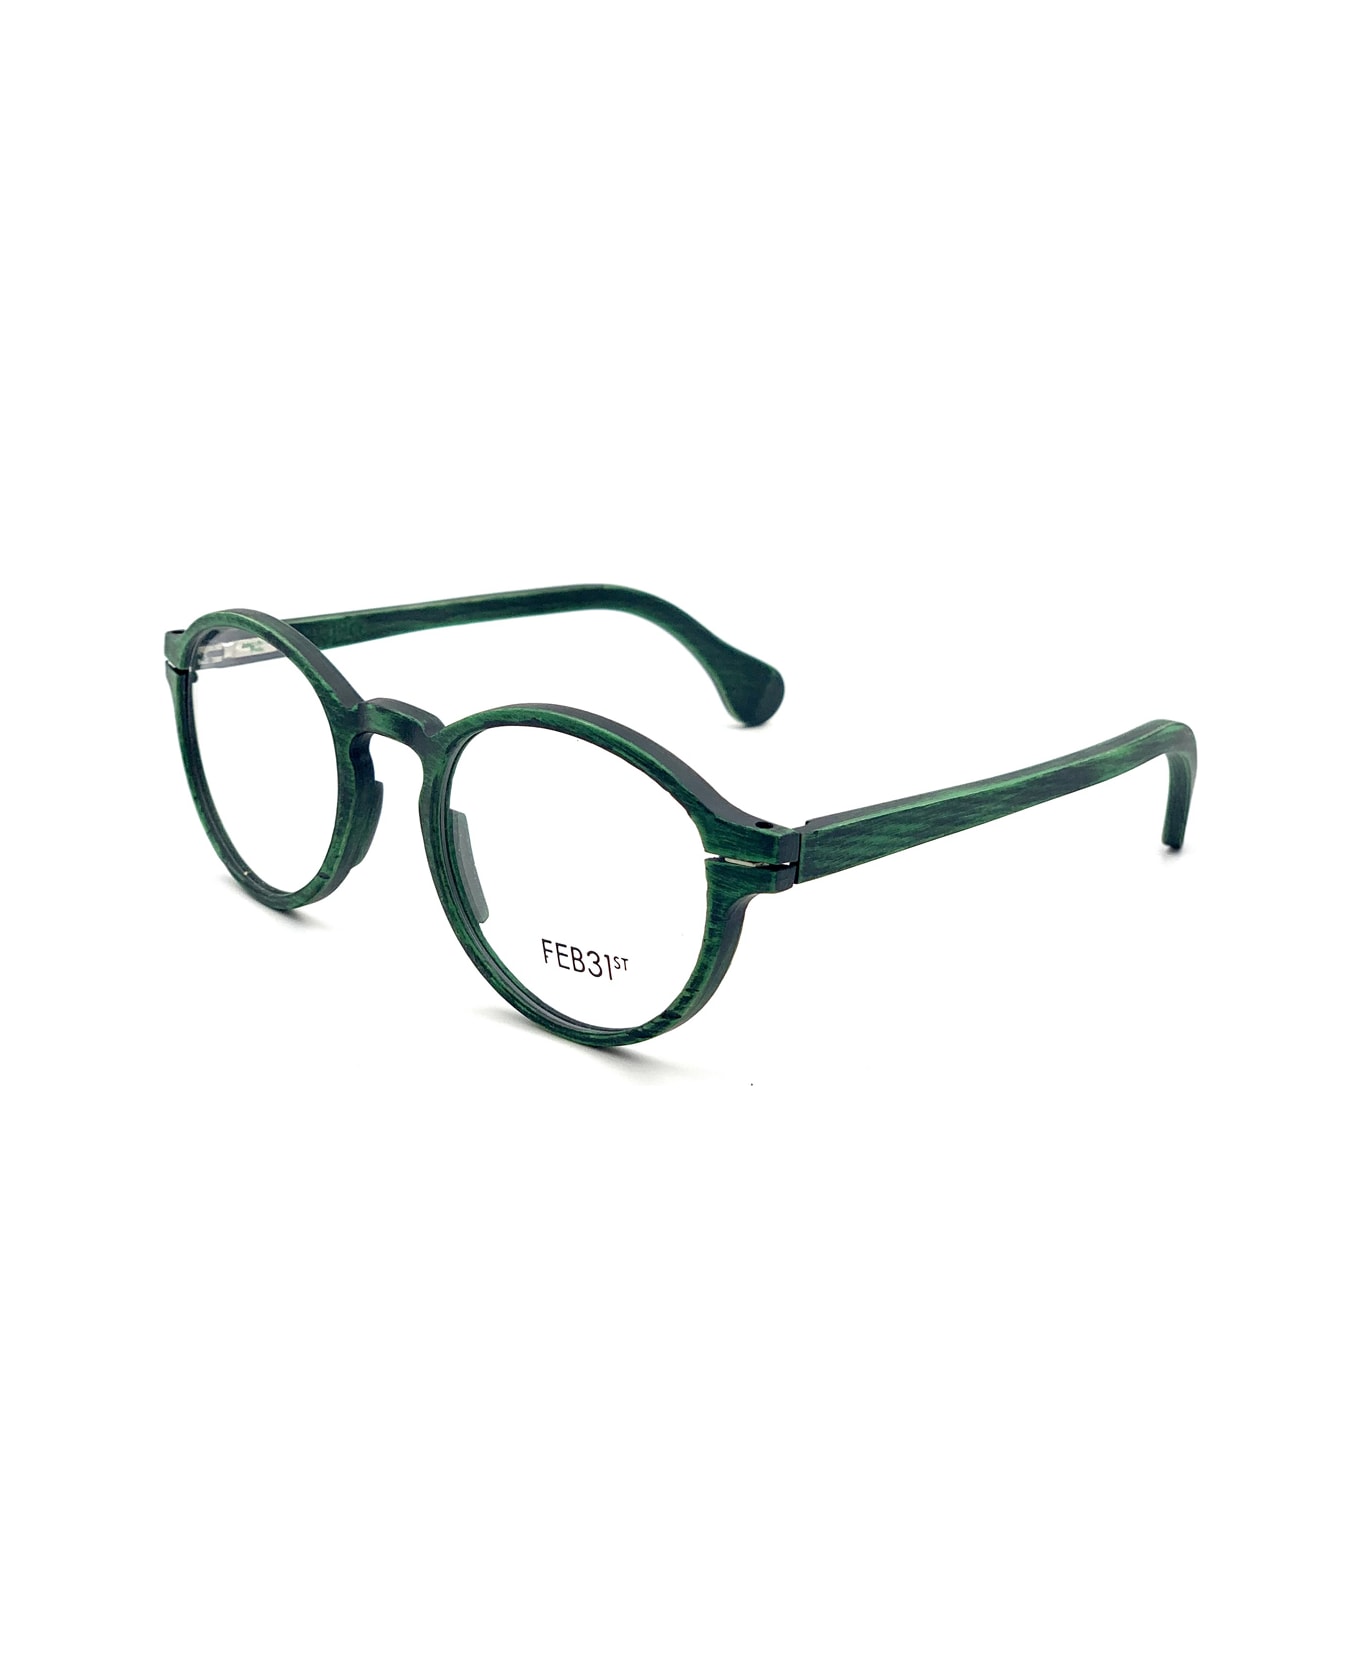 Feb31st Henry Verde Glasses - Verde